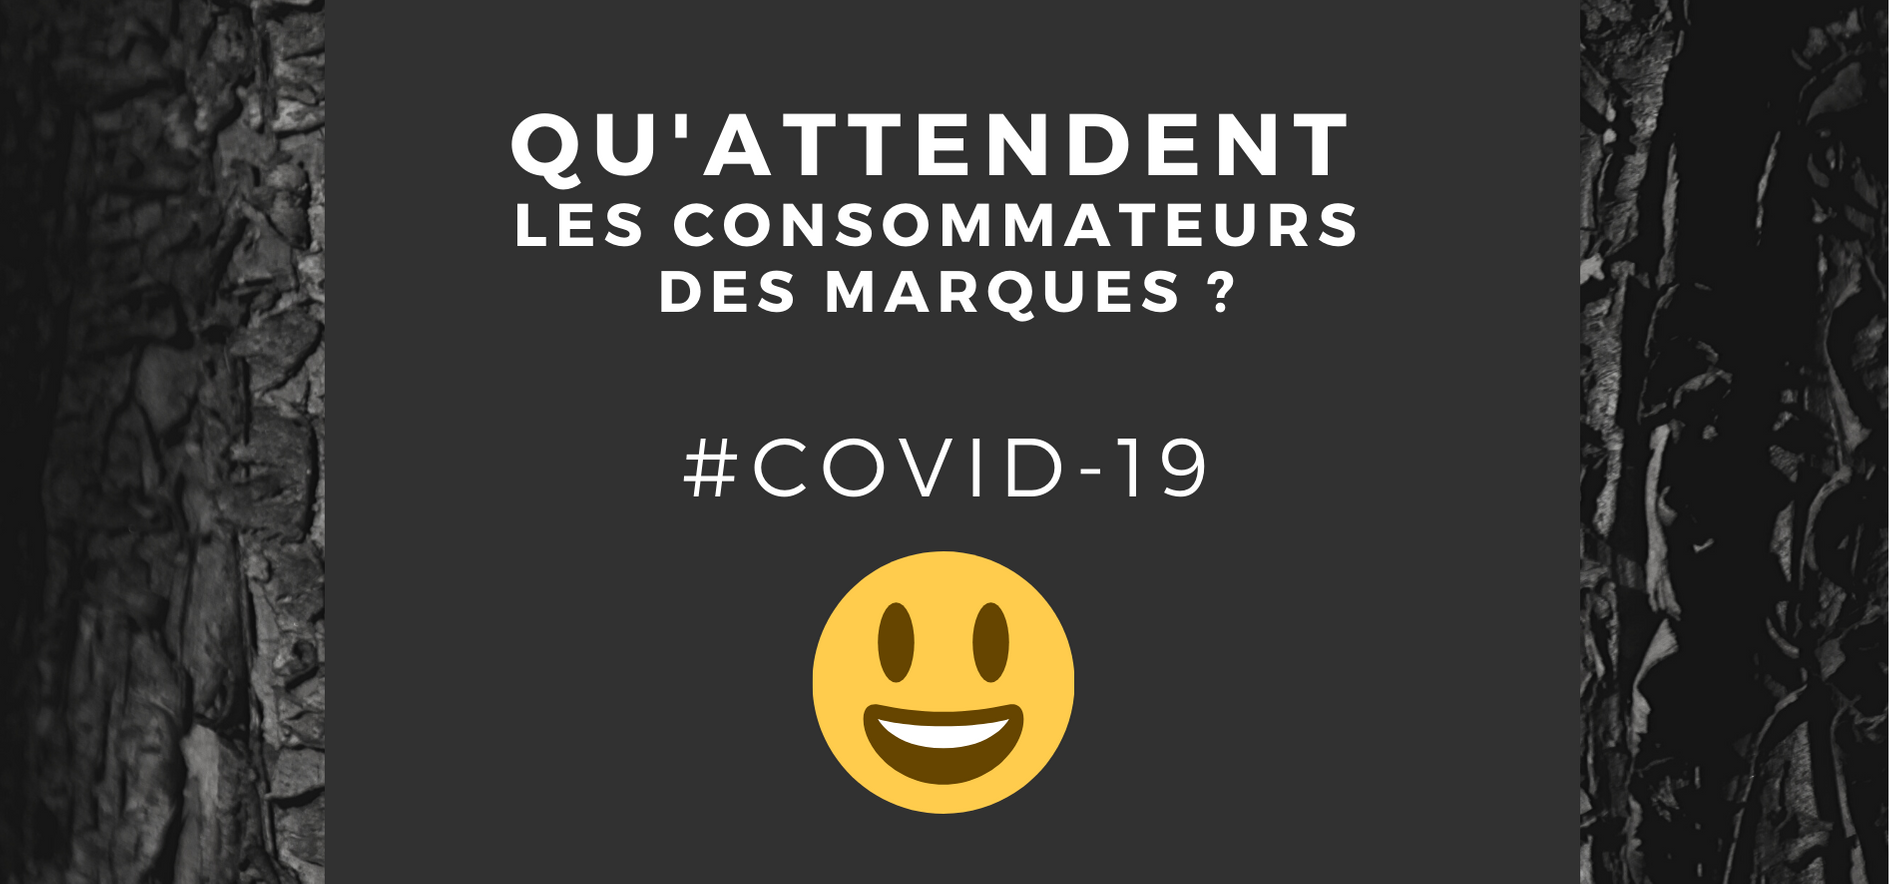 Attentes des consommateurs Covid#19 - AD LINE Cabinet Conseil en Communication sensible et de crise Martinique Guadeloupe Guyane